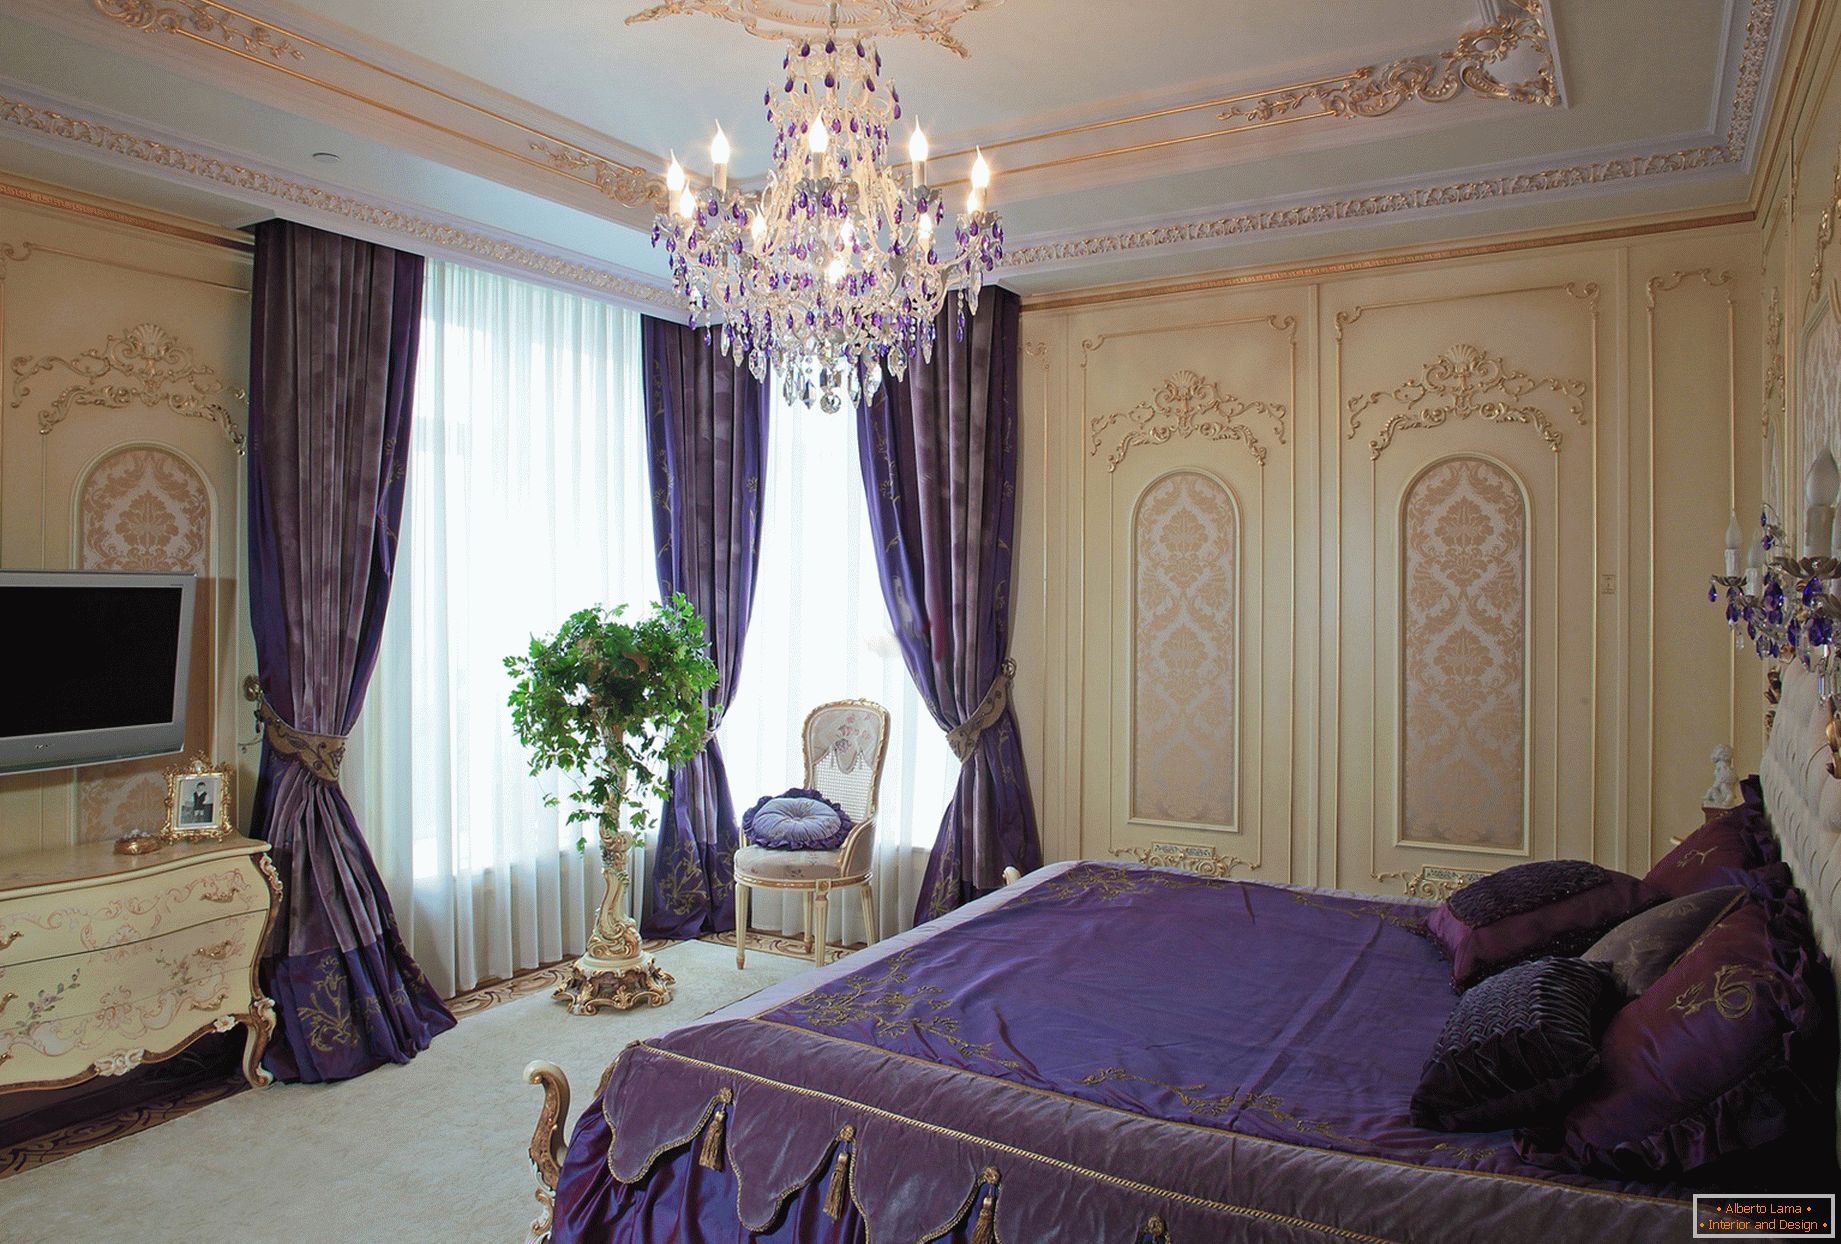 Quarto elegante em estilo barroco. Um conceito de design sutil - cortinas roxas escuras são combinadas com a cama combinada em tom.